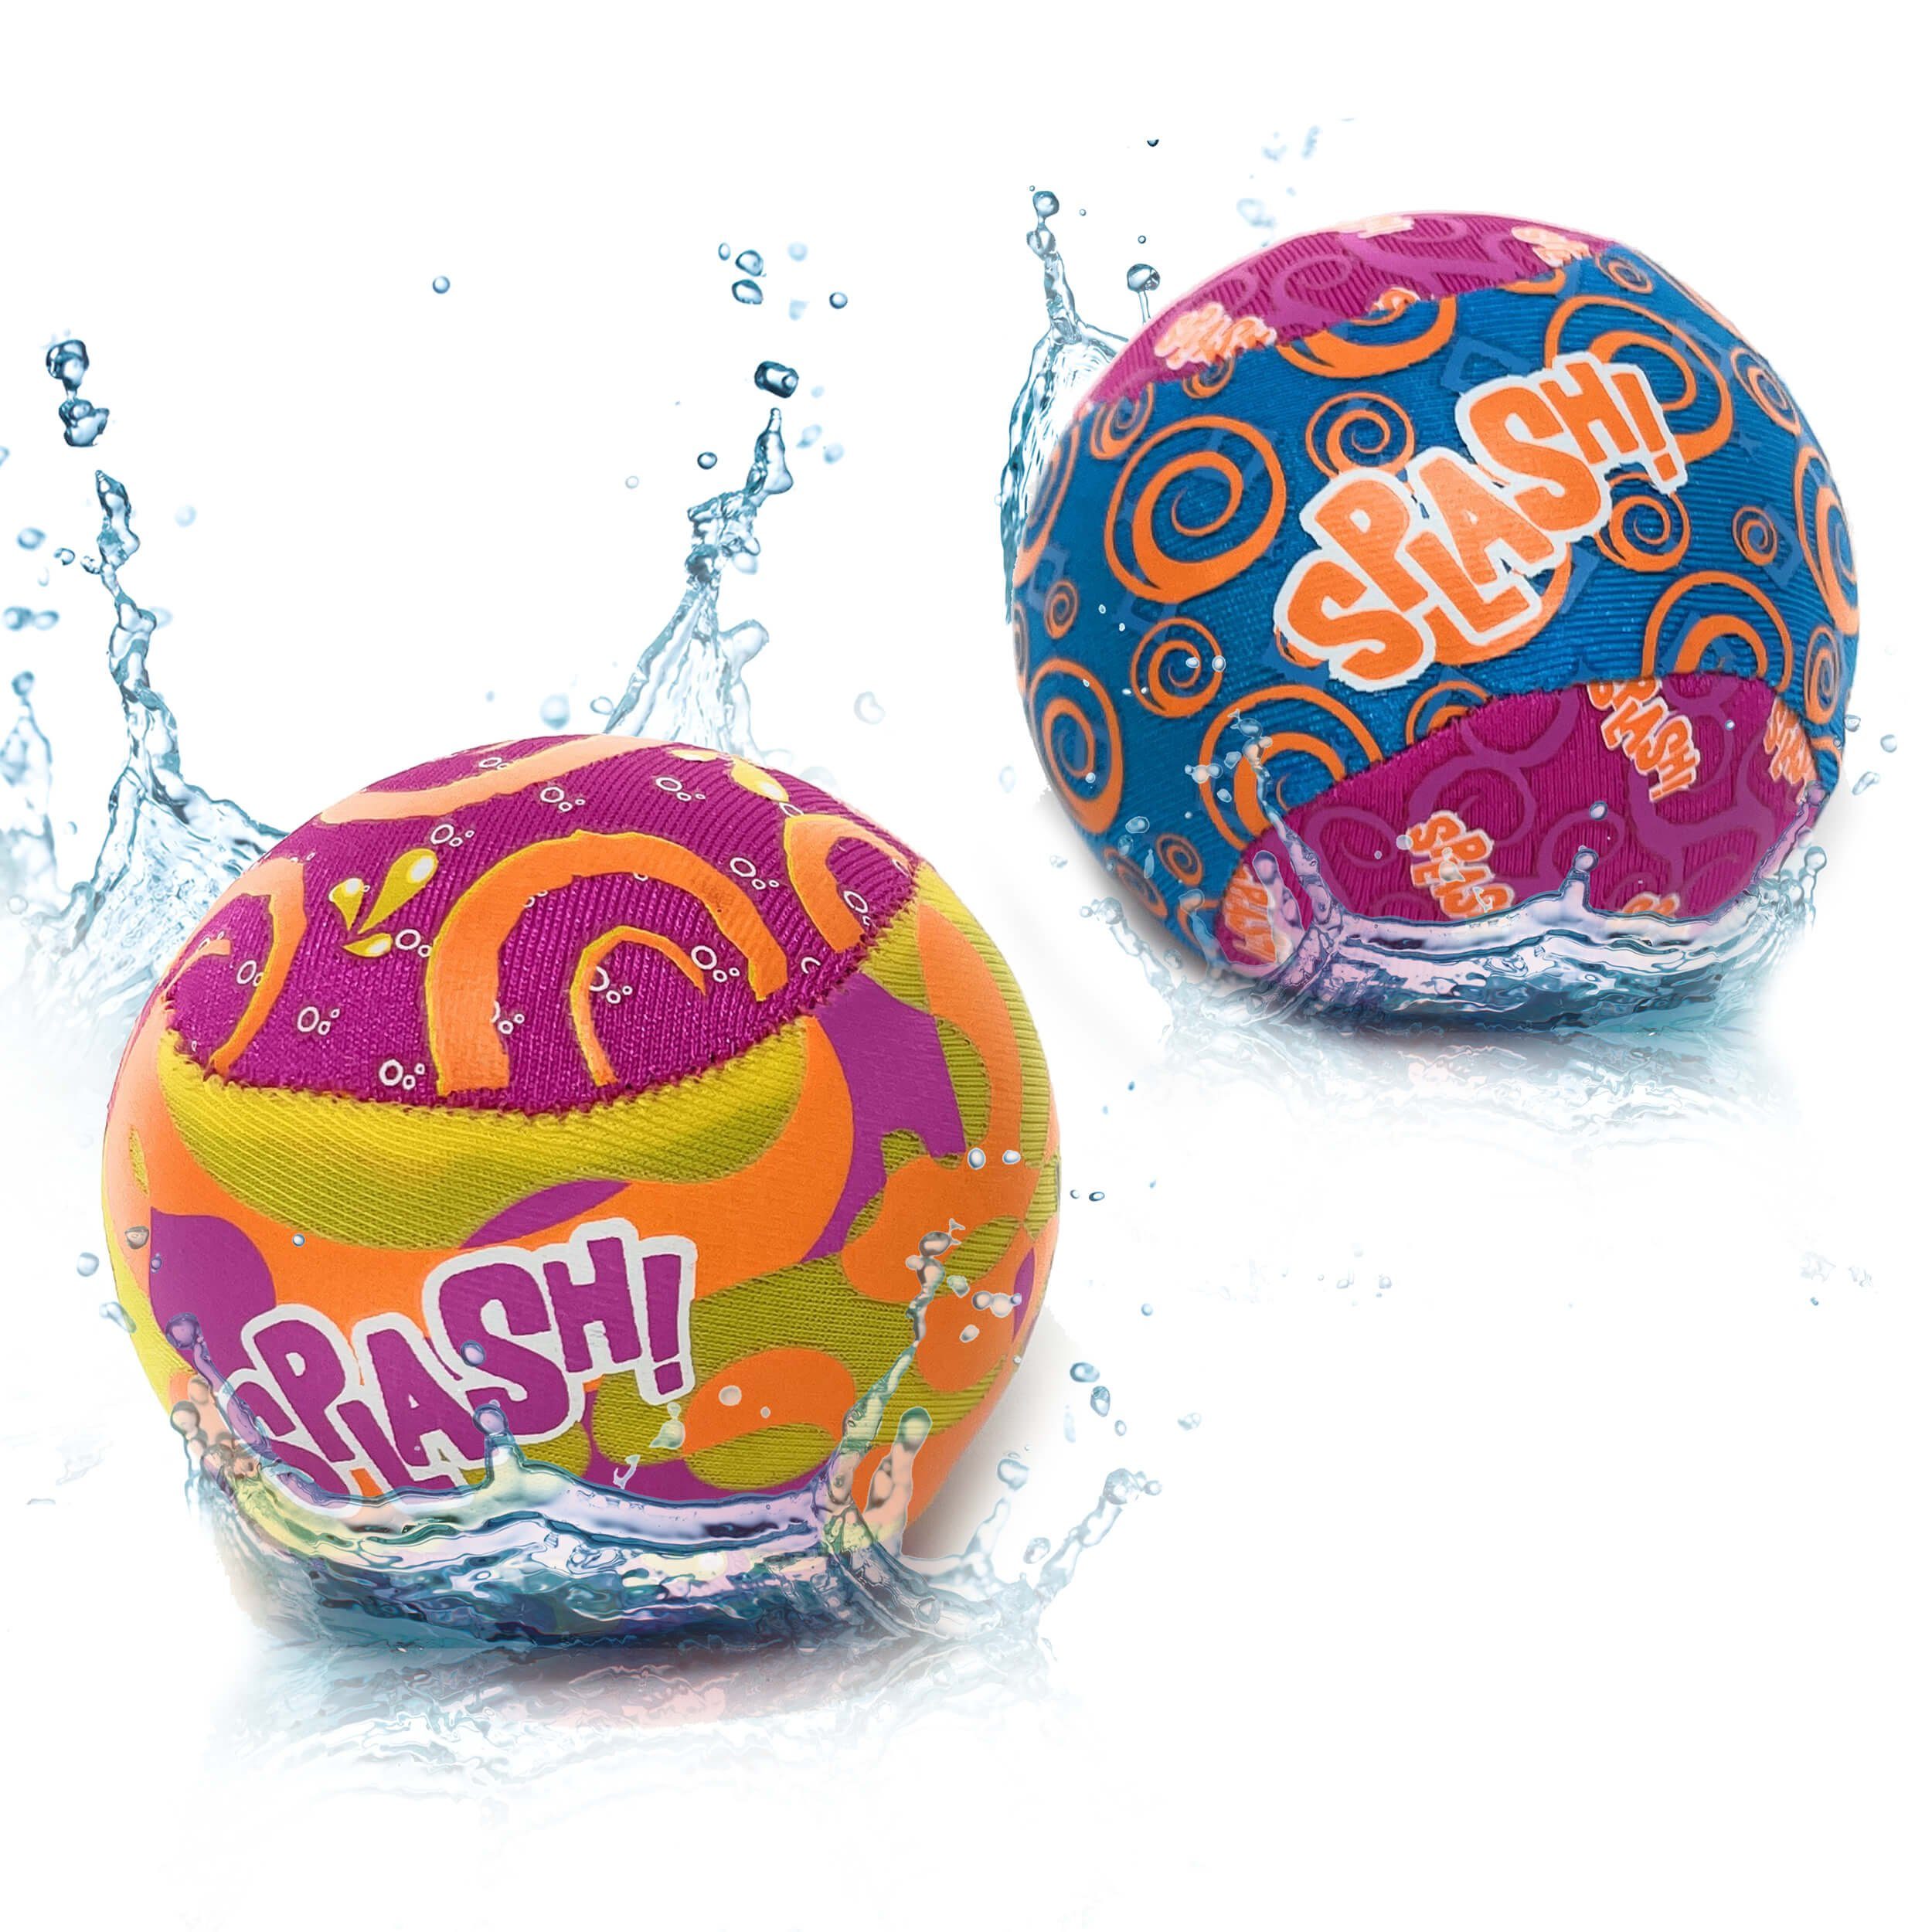 TOBJA Lernspielzeug [OTTO] 2 Stück Splash Bouncing Ball Wasser Flummi Ø 5,5 cm 2-Var, 2 Stück im Set für Kinder / Erwachsene, Wasser Neoprenball 100g